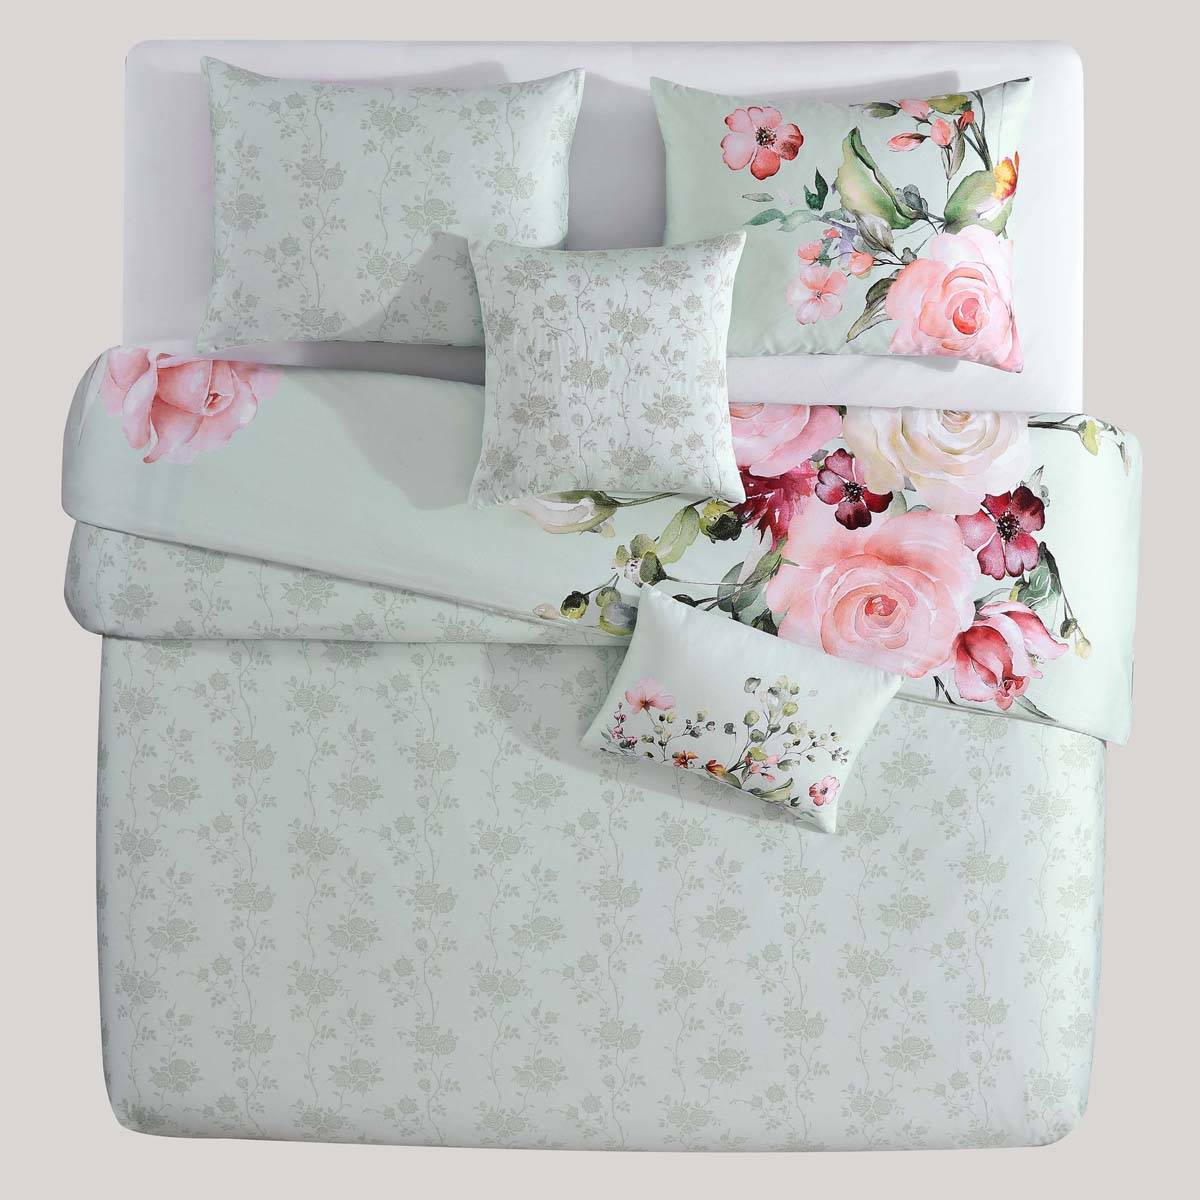 Bebejan(R) Rose On Misty Green 5pc. Reversible Comforter Set